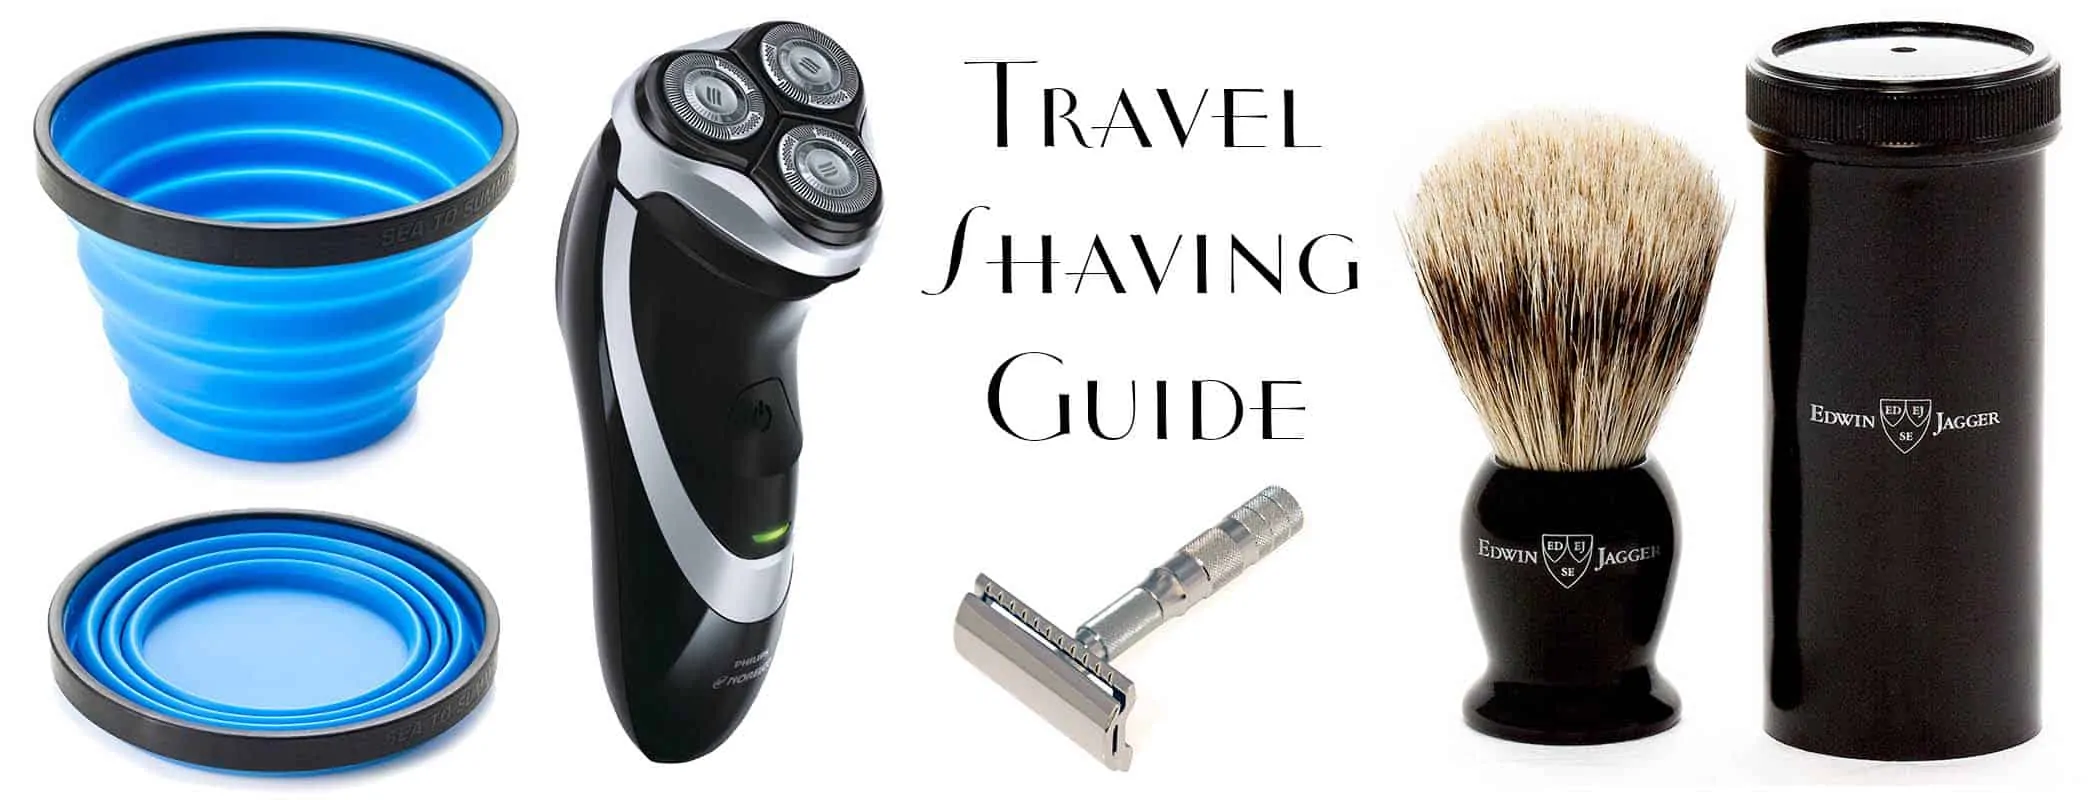 Tavel Shaving Guide